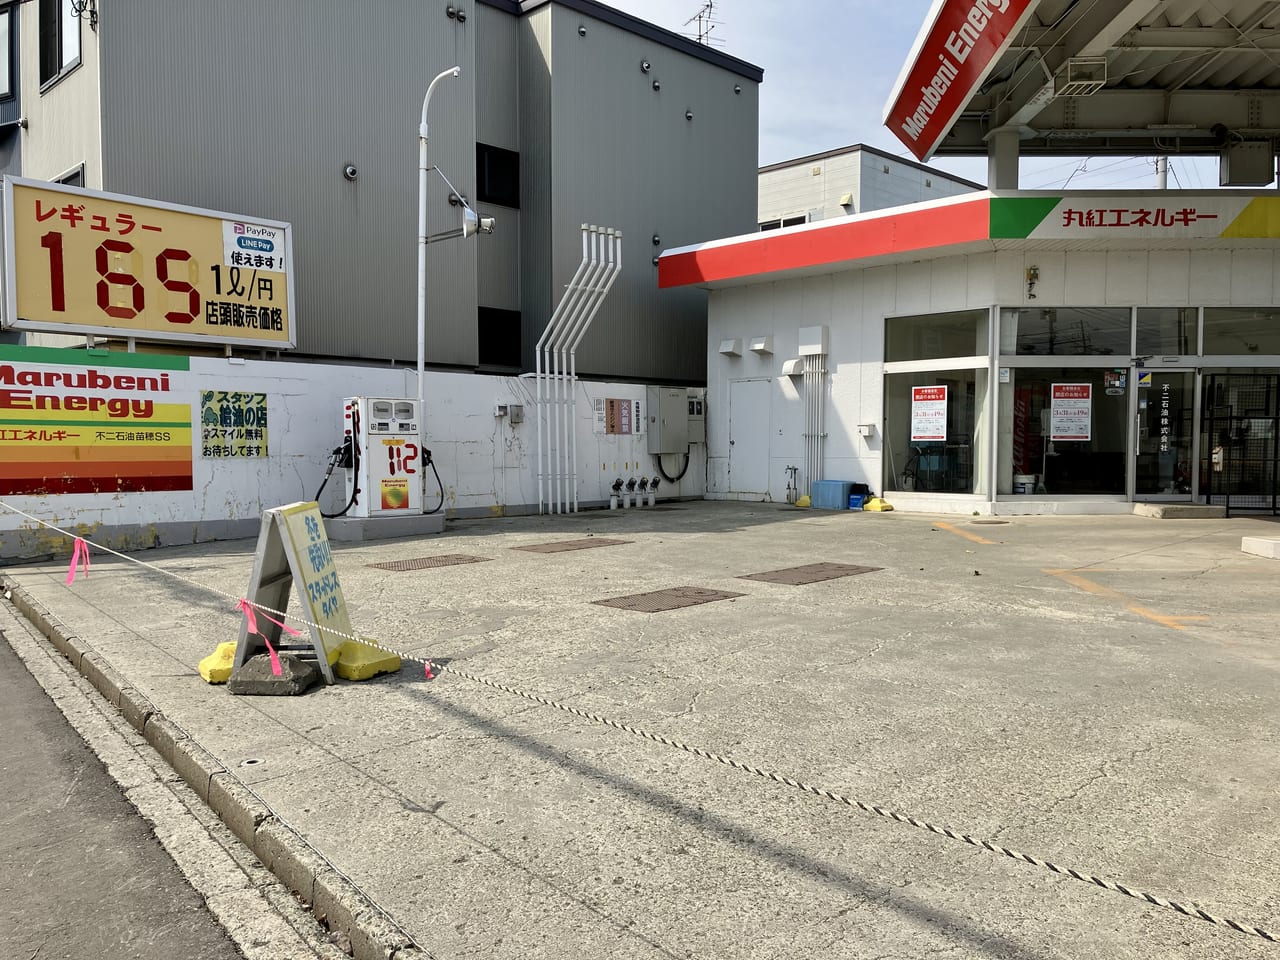 3月31日19時で閉店の「丸紅エネルギー苗穂サービスステーション」。閉店後のお店の様子を見てました。